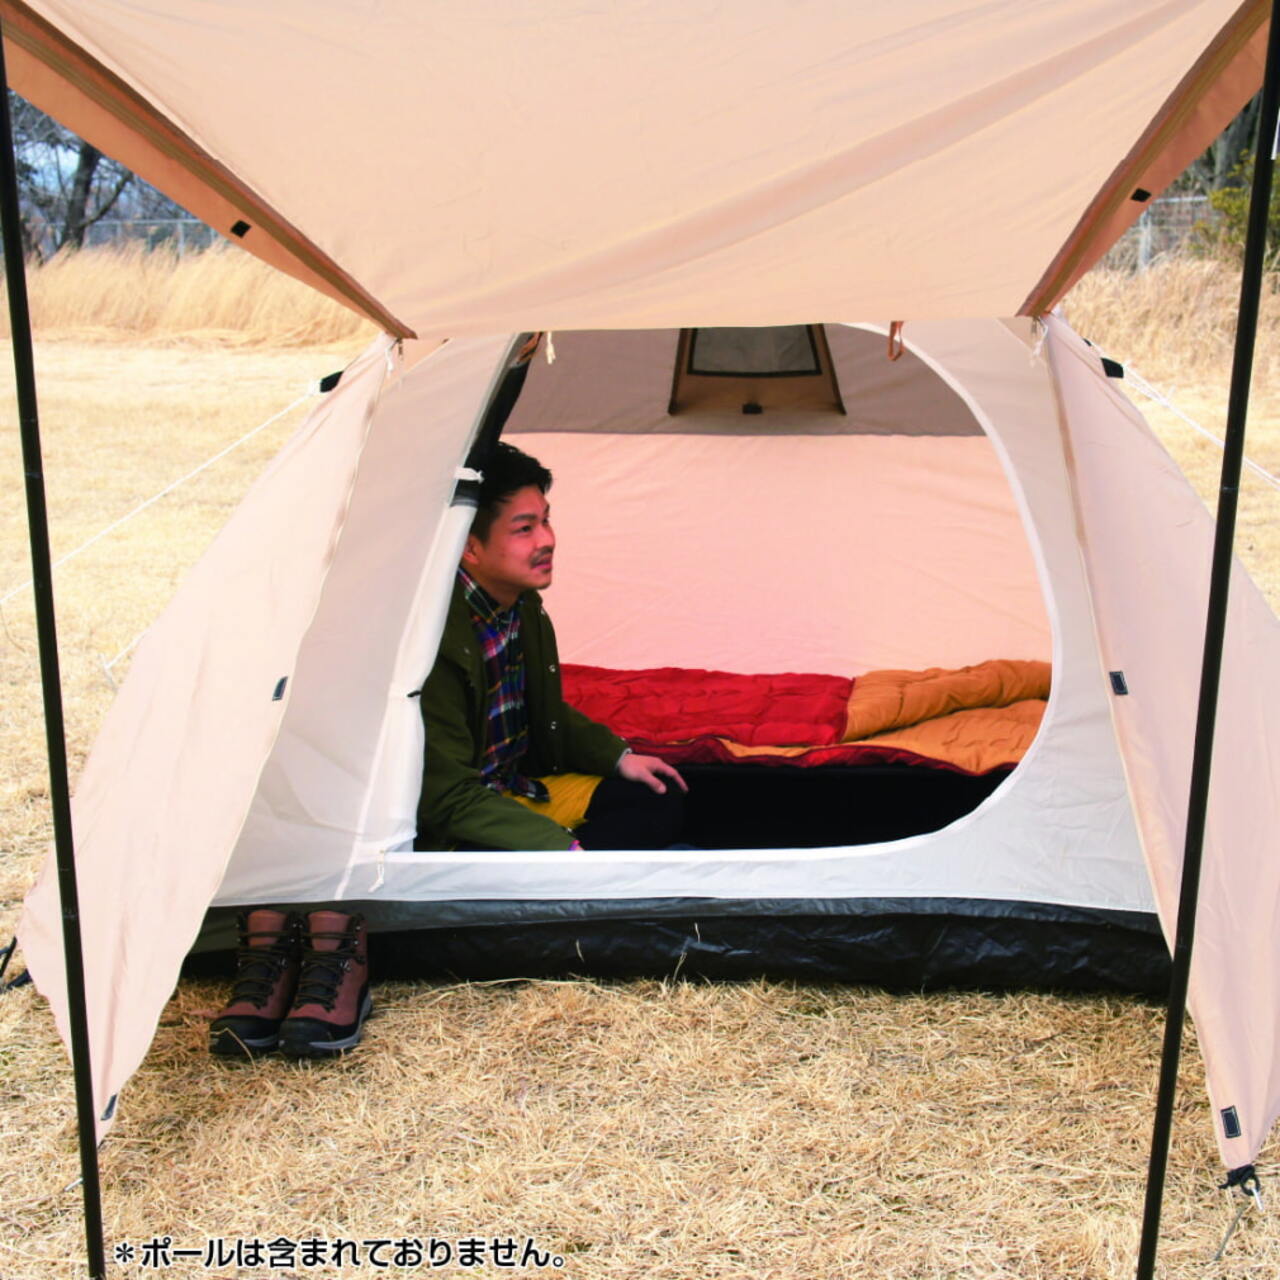 テントやチェアも！「ソロキャンプ」を始める初心者におすすめの道具10選 | TABIZINE～人生に旅心を～